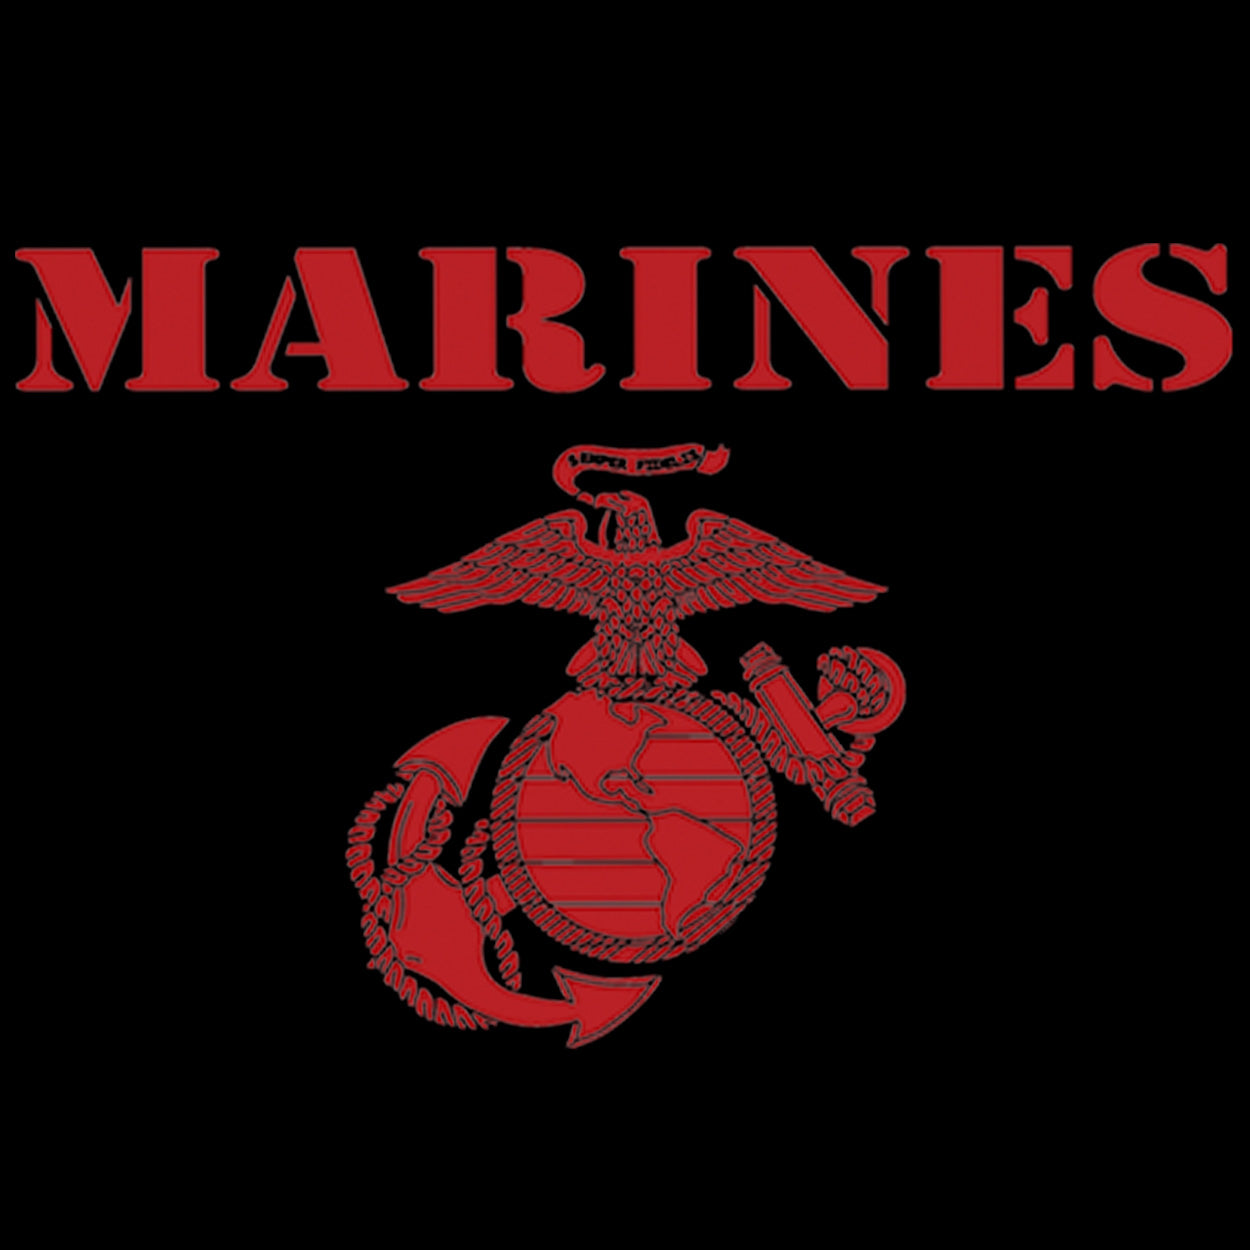 Red Vintage Marines Tee